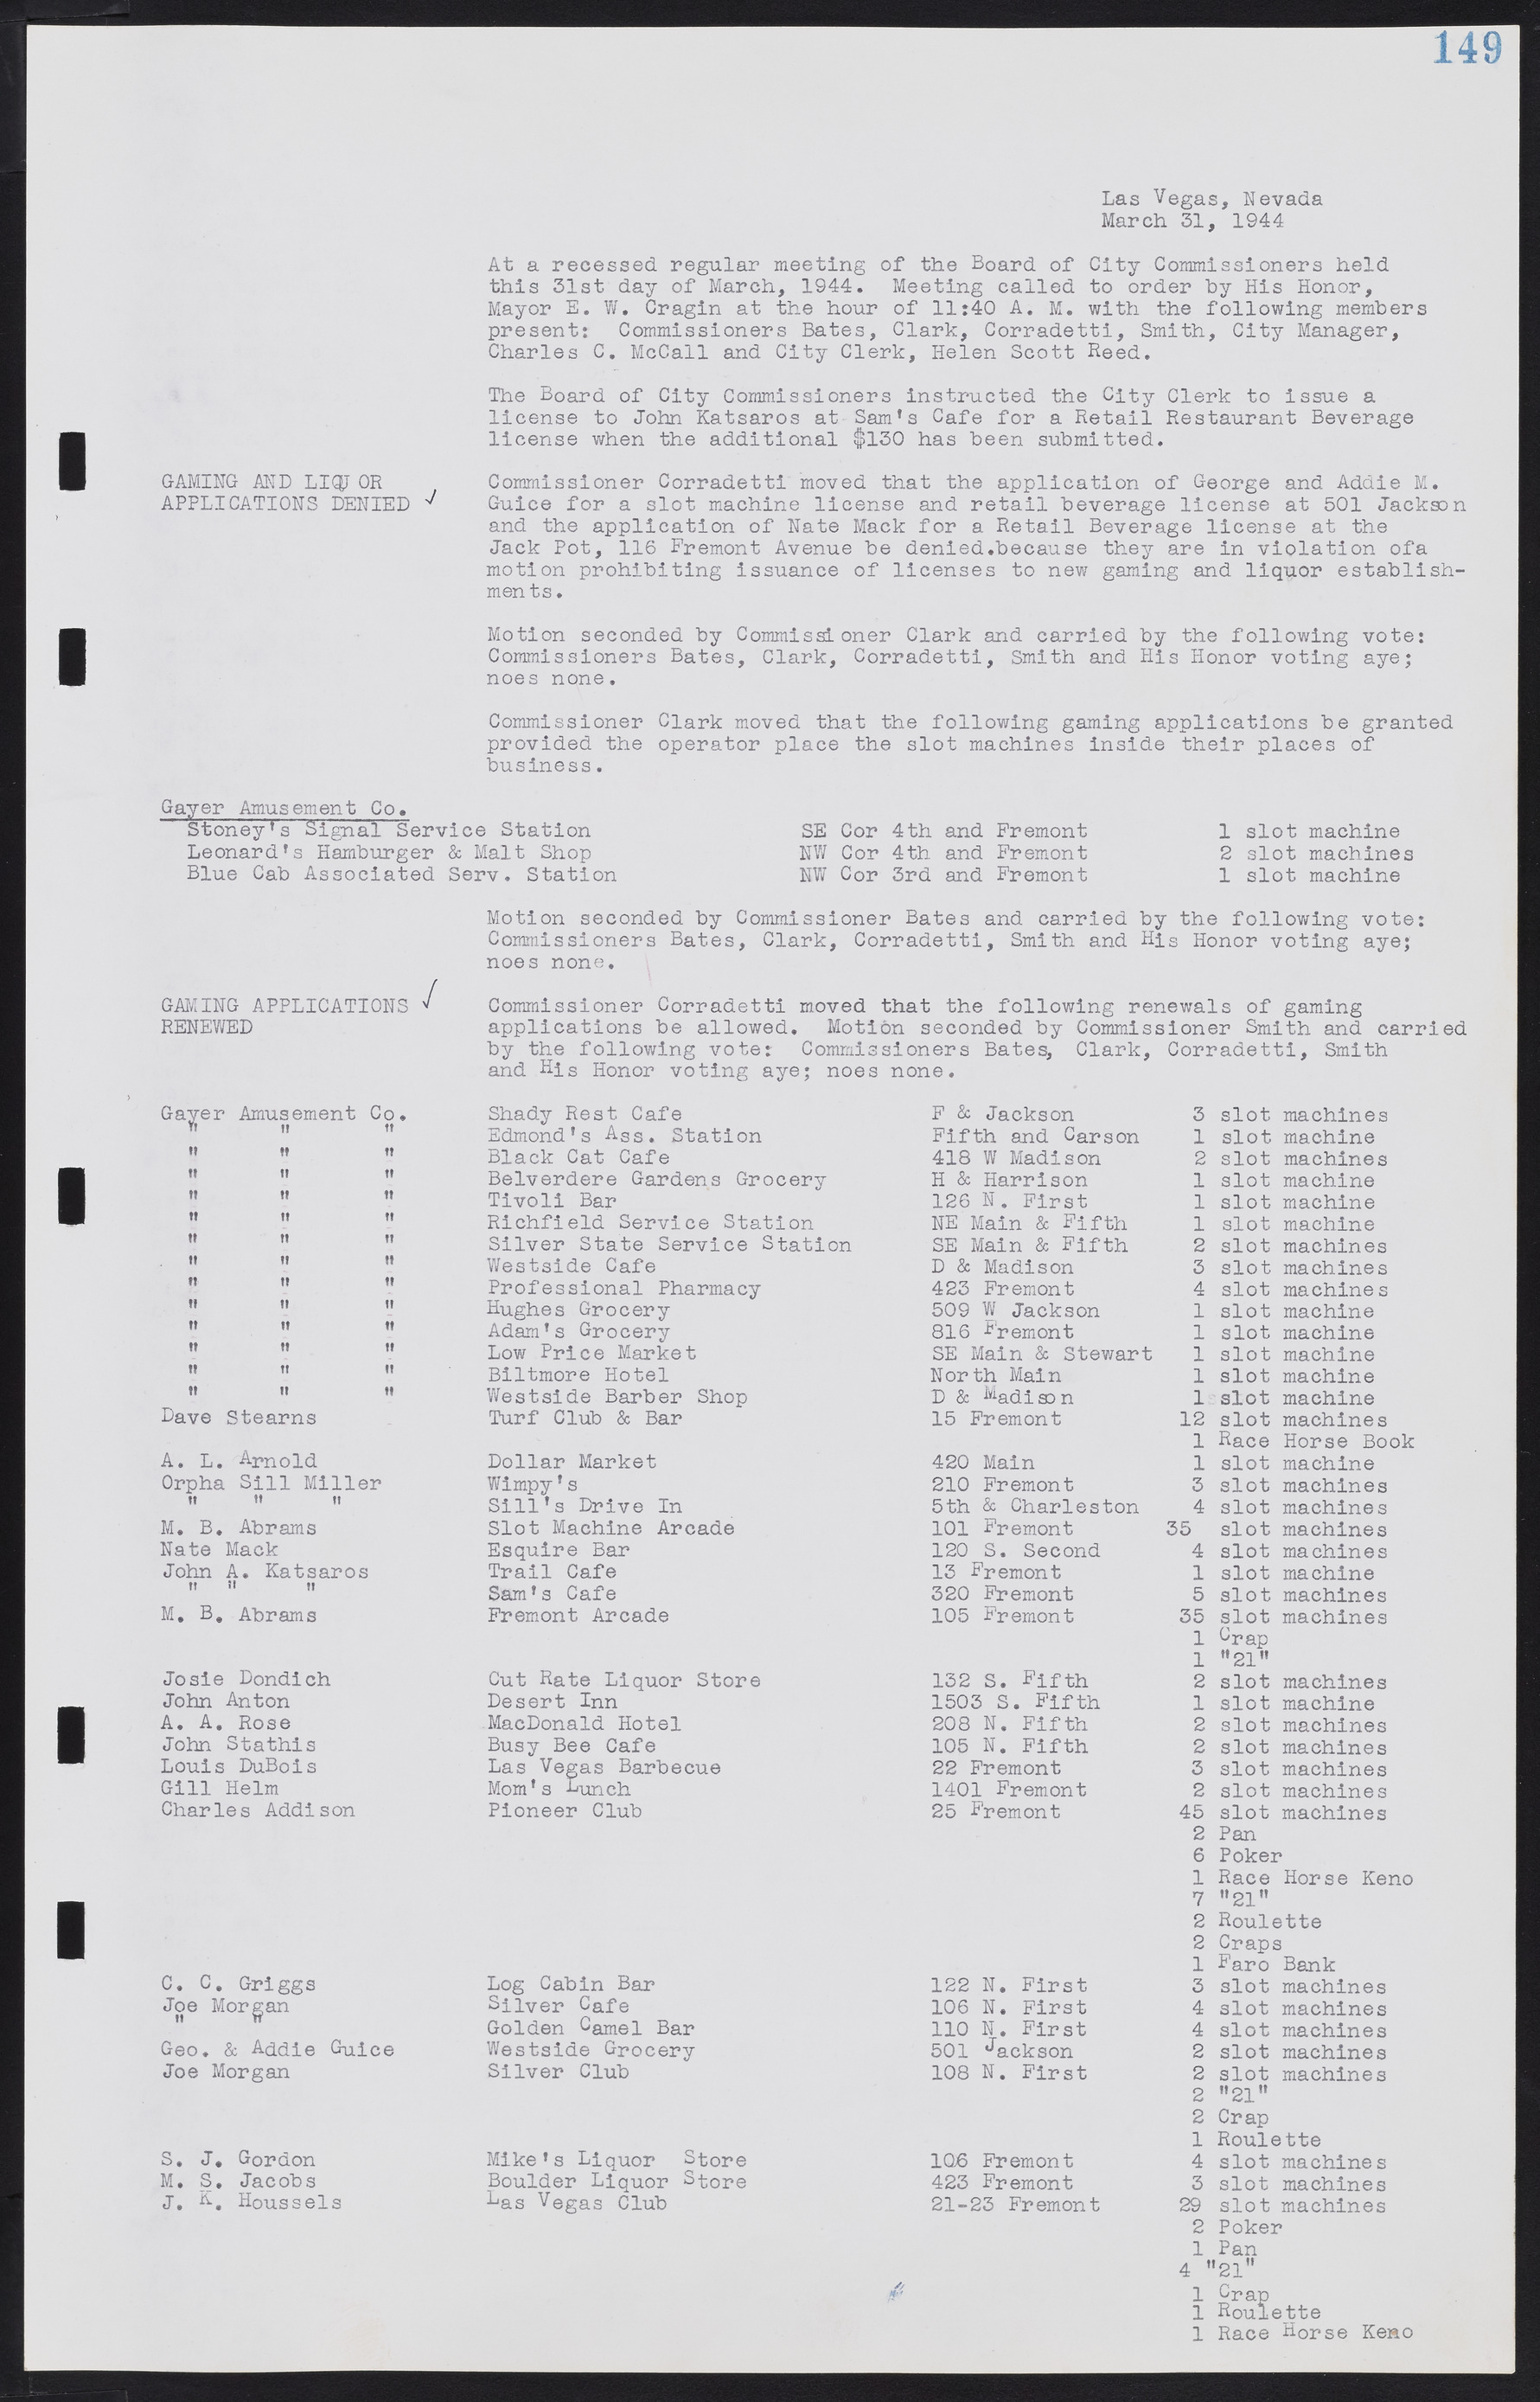 Las Vegas City Commission Minutes, August 11, 1942 to December 30, 1946, lvc000005-166